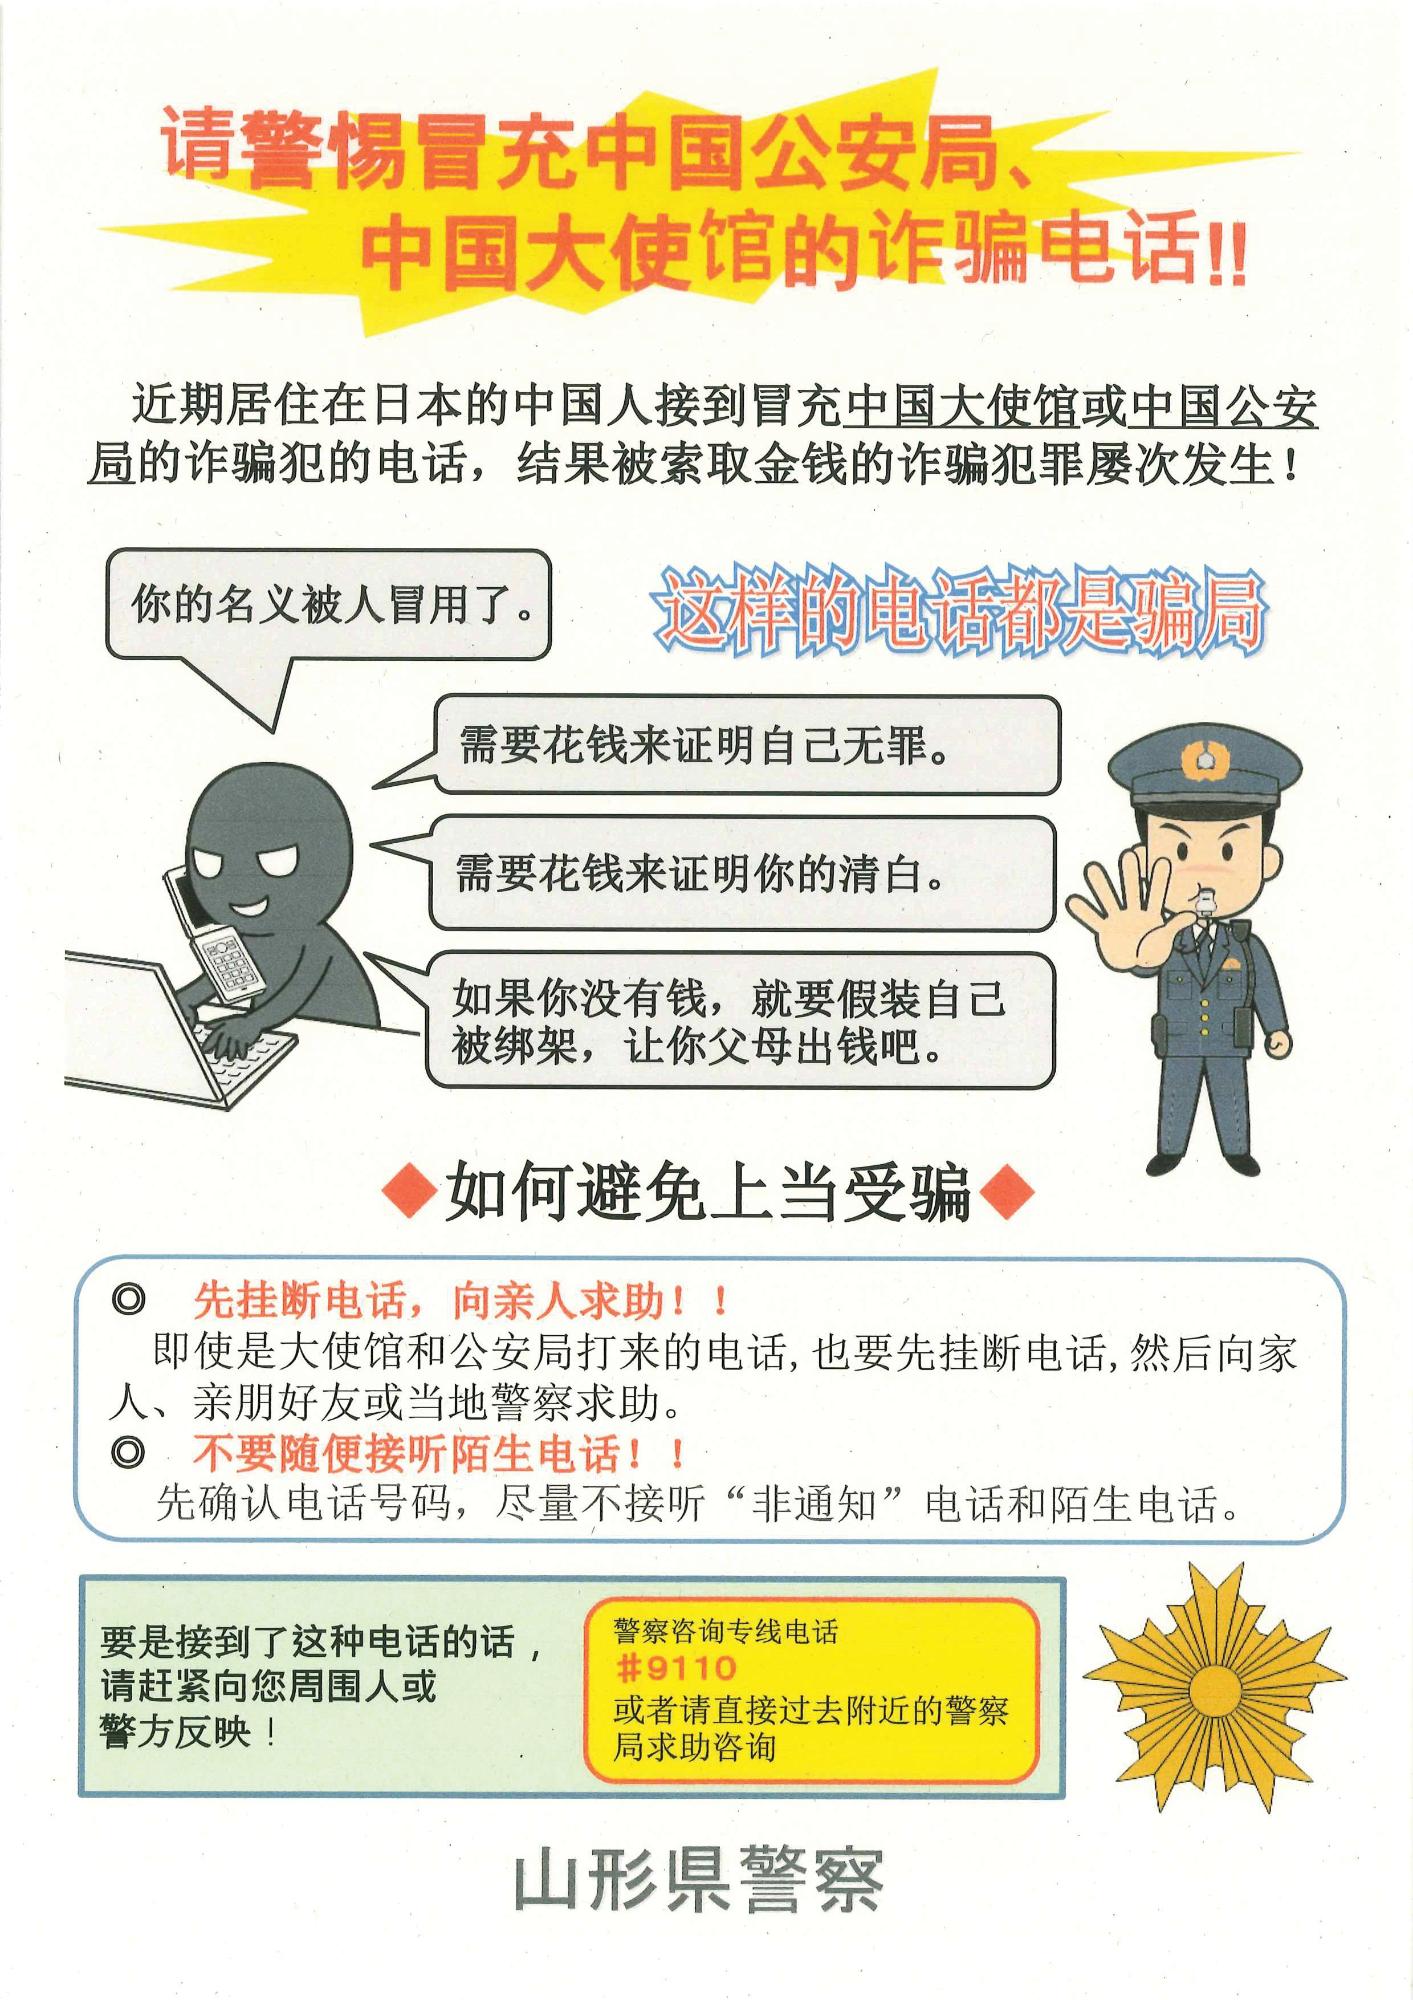 中国大使館や中国公安局を名乗る詐欺電話に注意と書かれたポスター（中国語版）